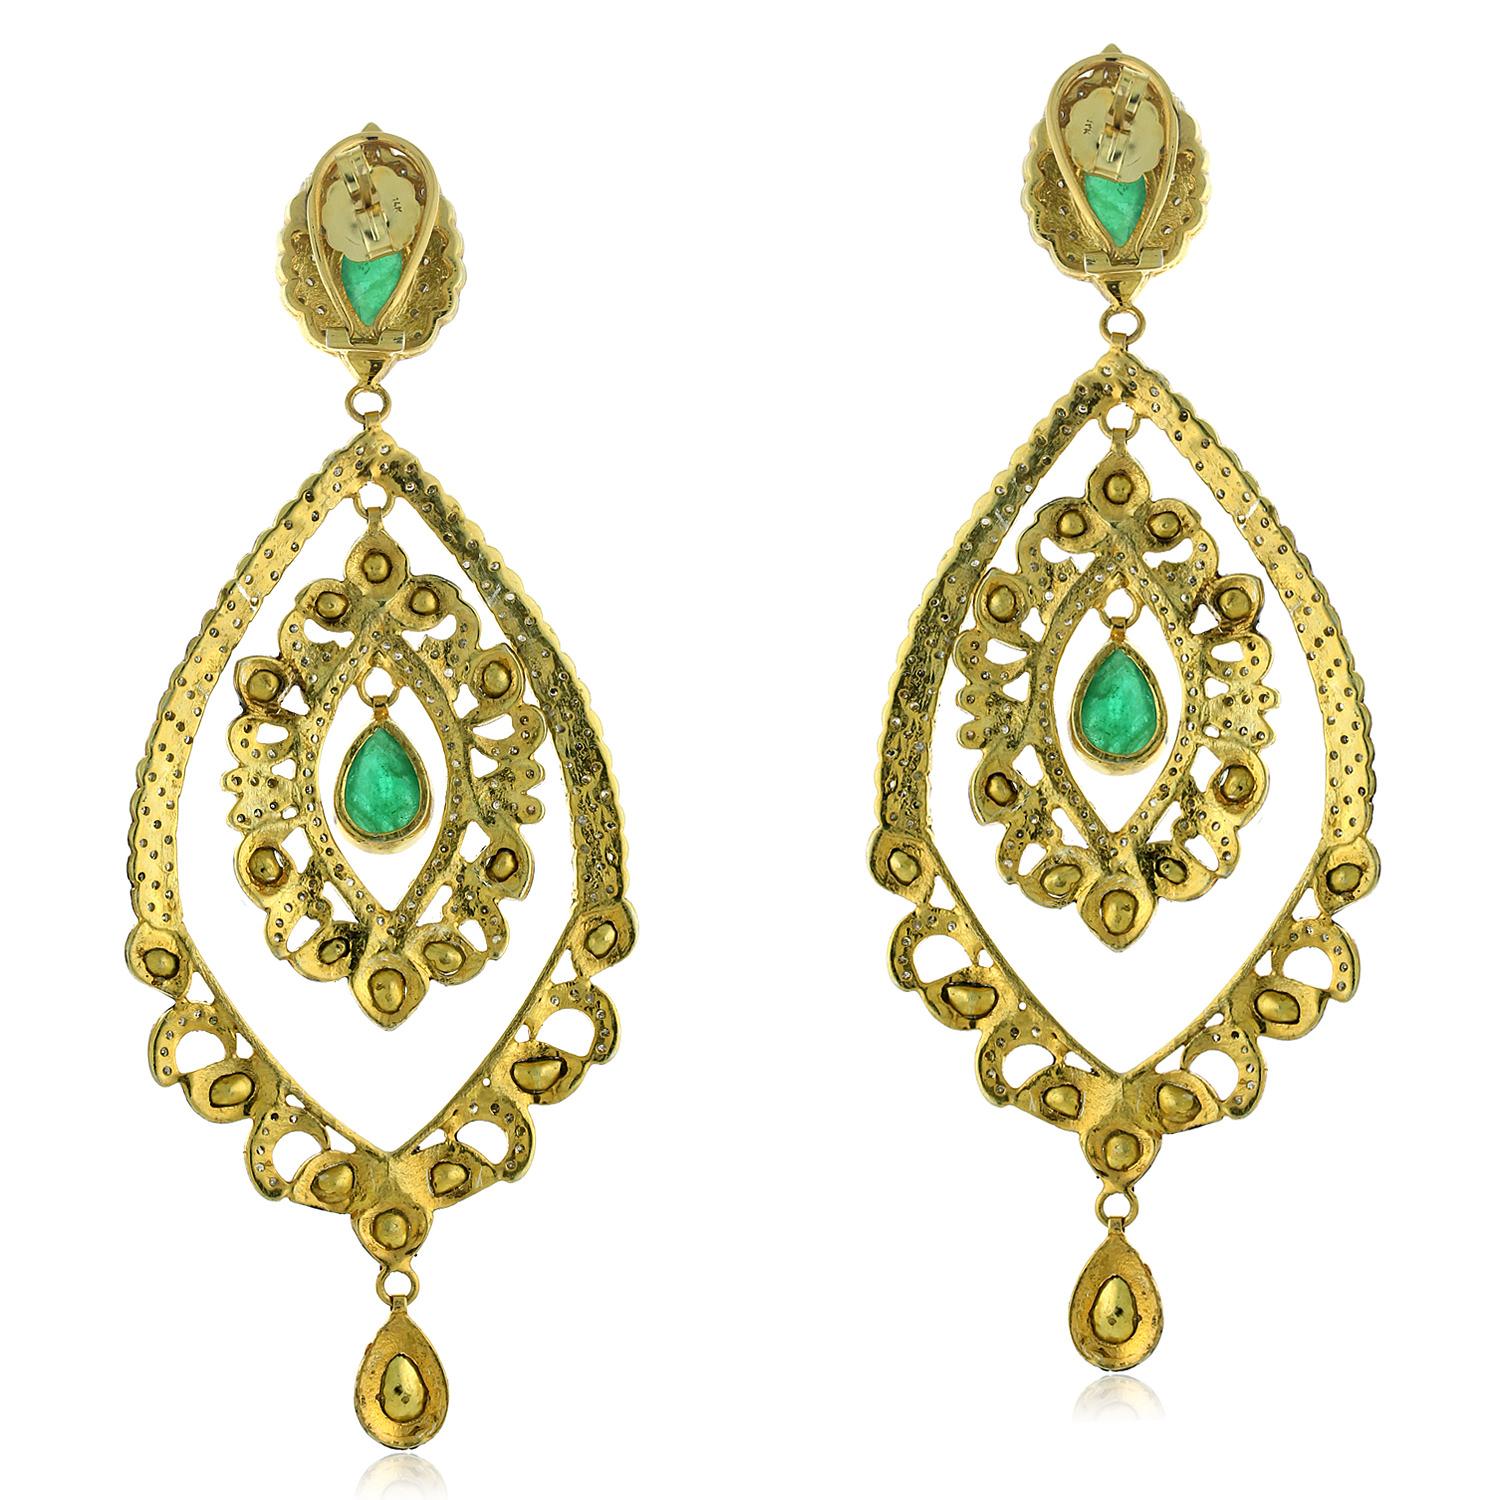 Diese Ohrringe sind in der Regel aus Gold oder Silber gefertigt und mit Smaragden und Polki-Diamanten besetzt, d. h. ungeschliffenen, natürlichen Diamanten, die ein rohes und rustikales Aussehen haben. Die Ohrringe können auch mit Pave-Diamanten